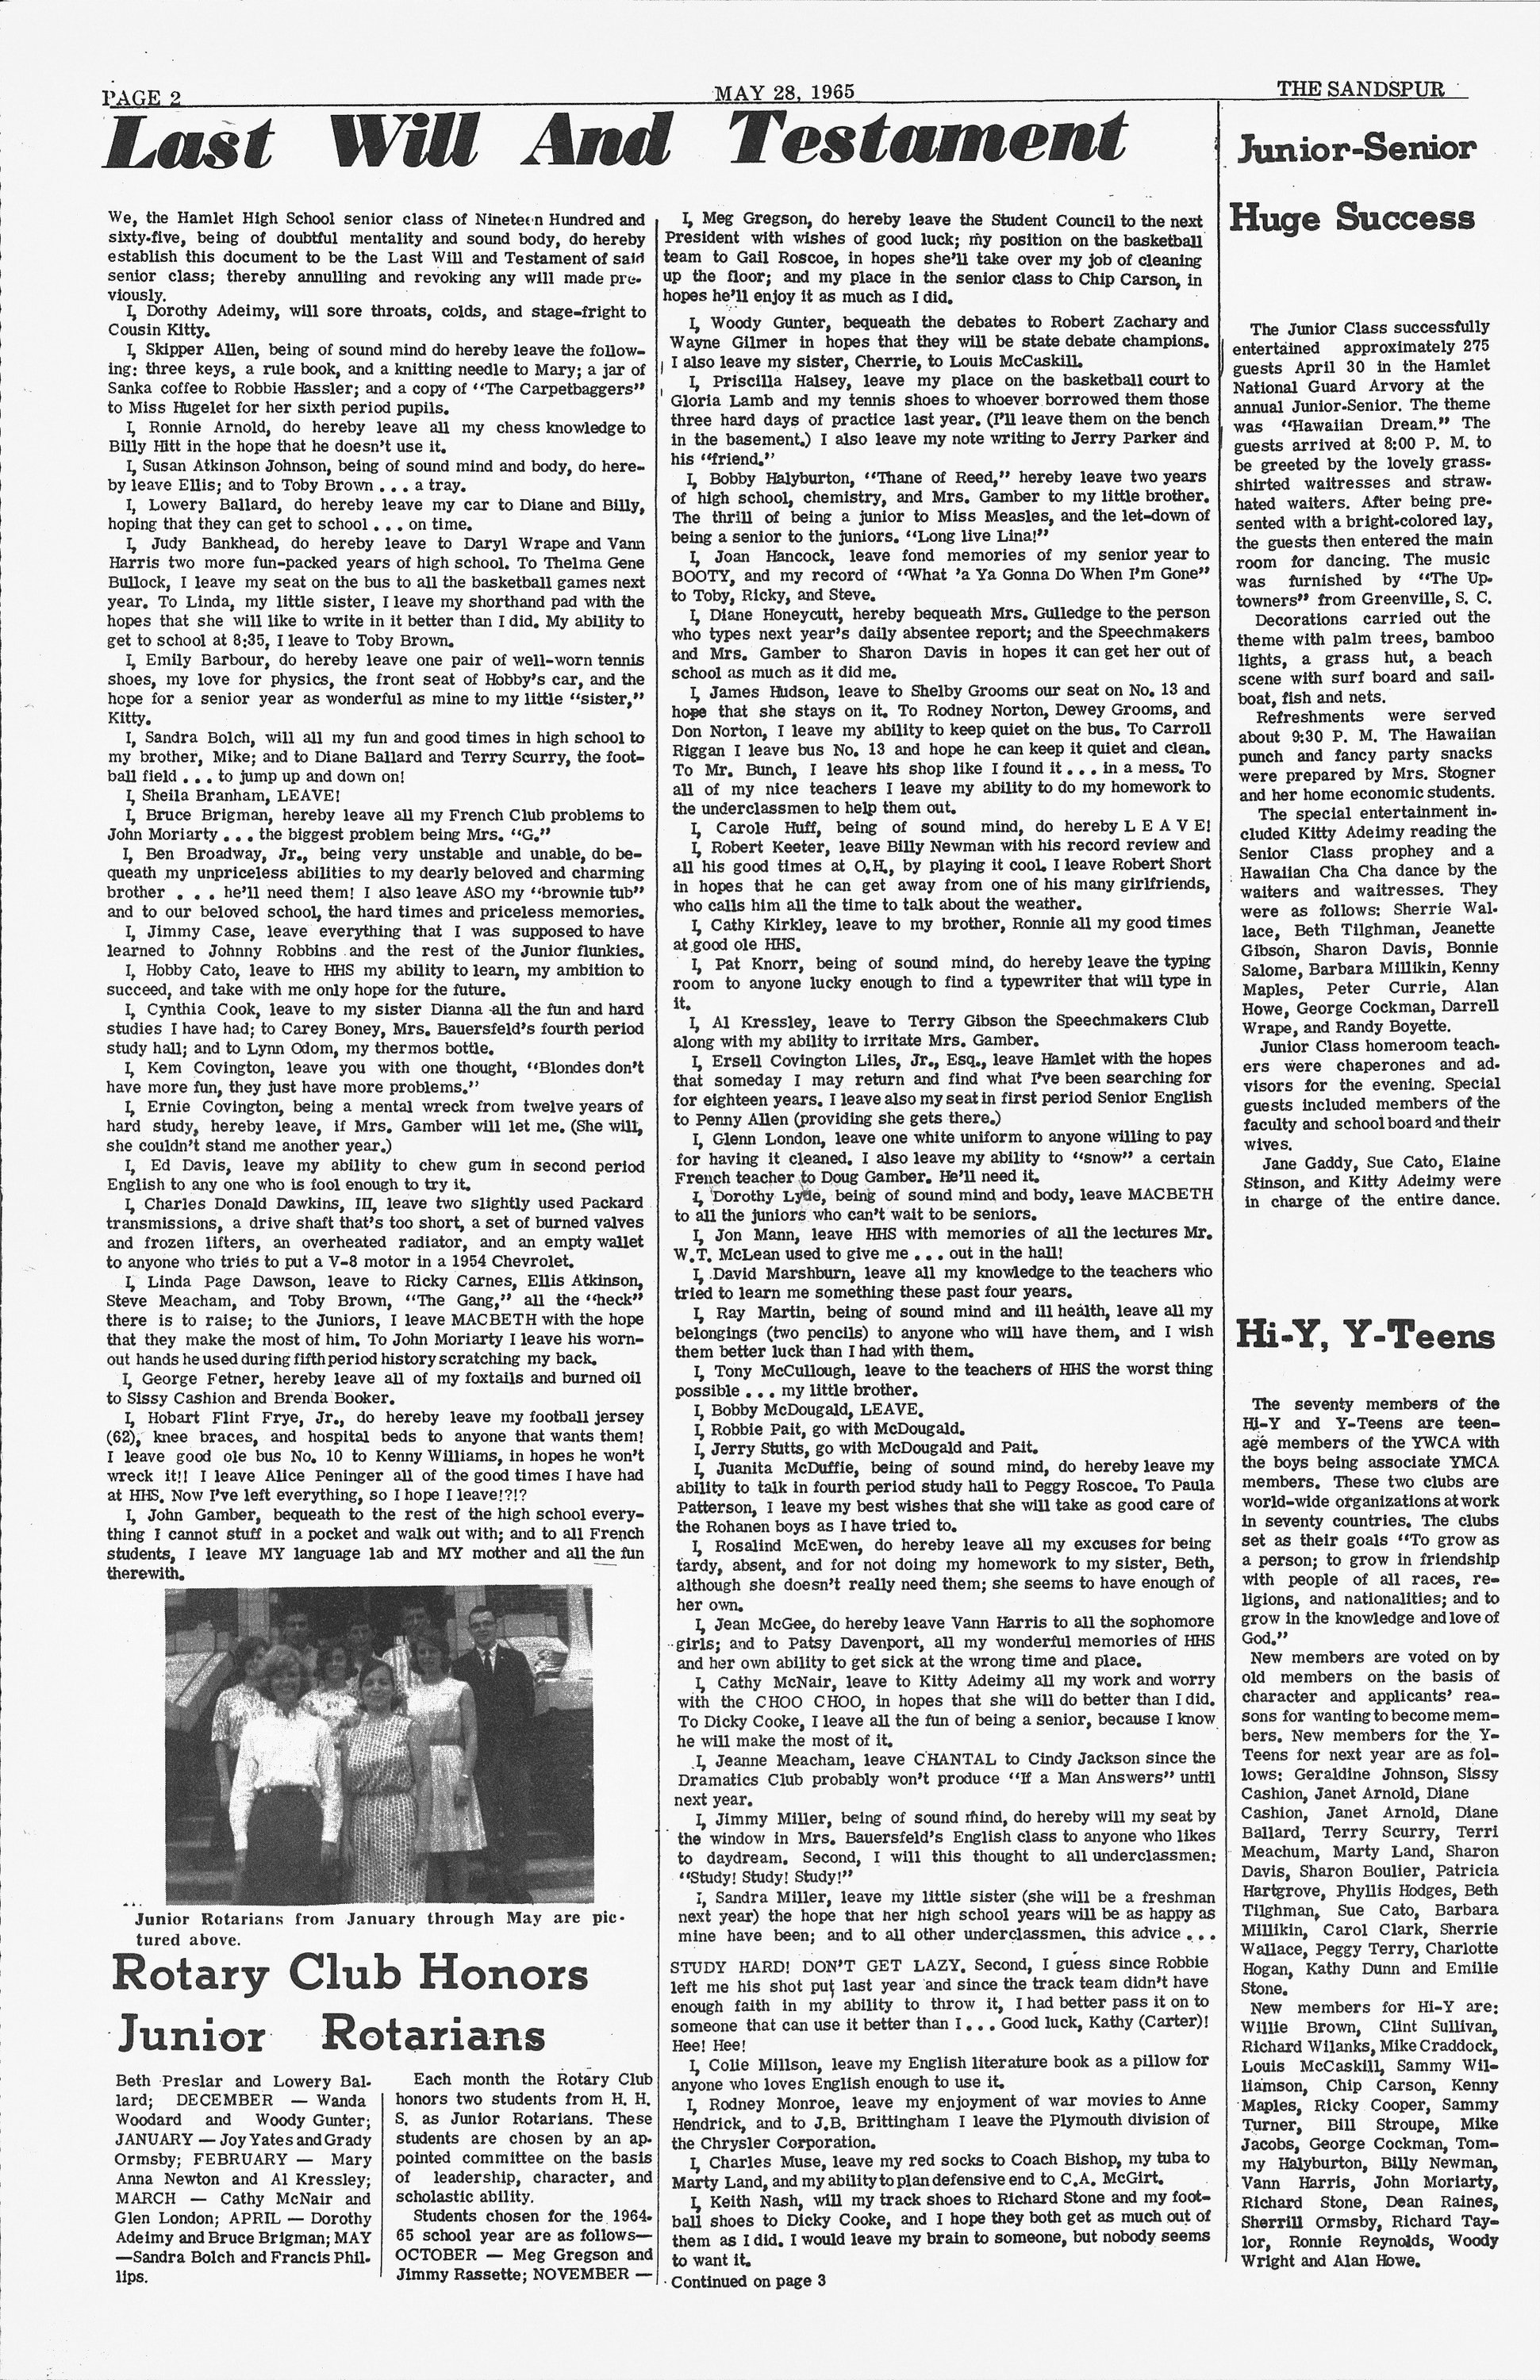 6 Sandspur_May 28 1965_Page_2.jpg